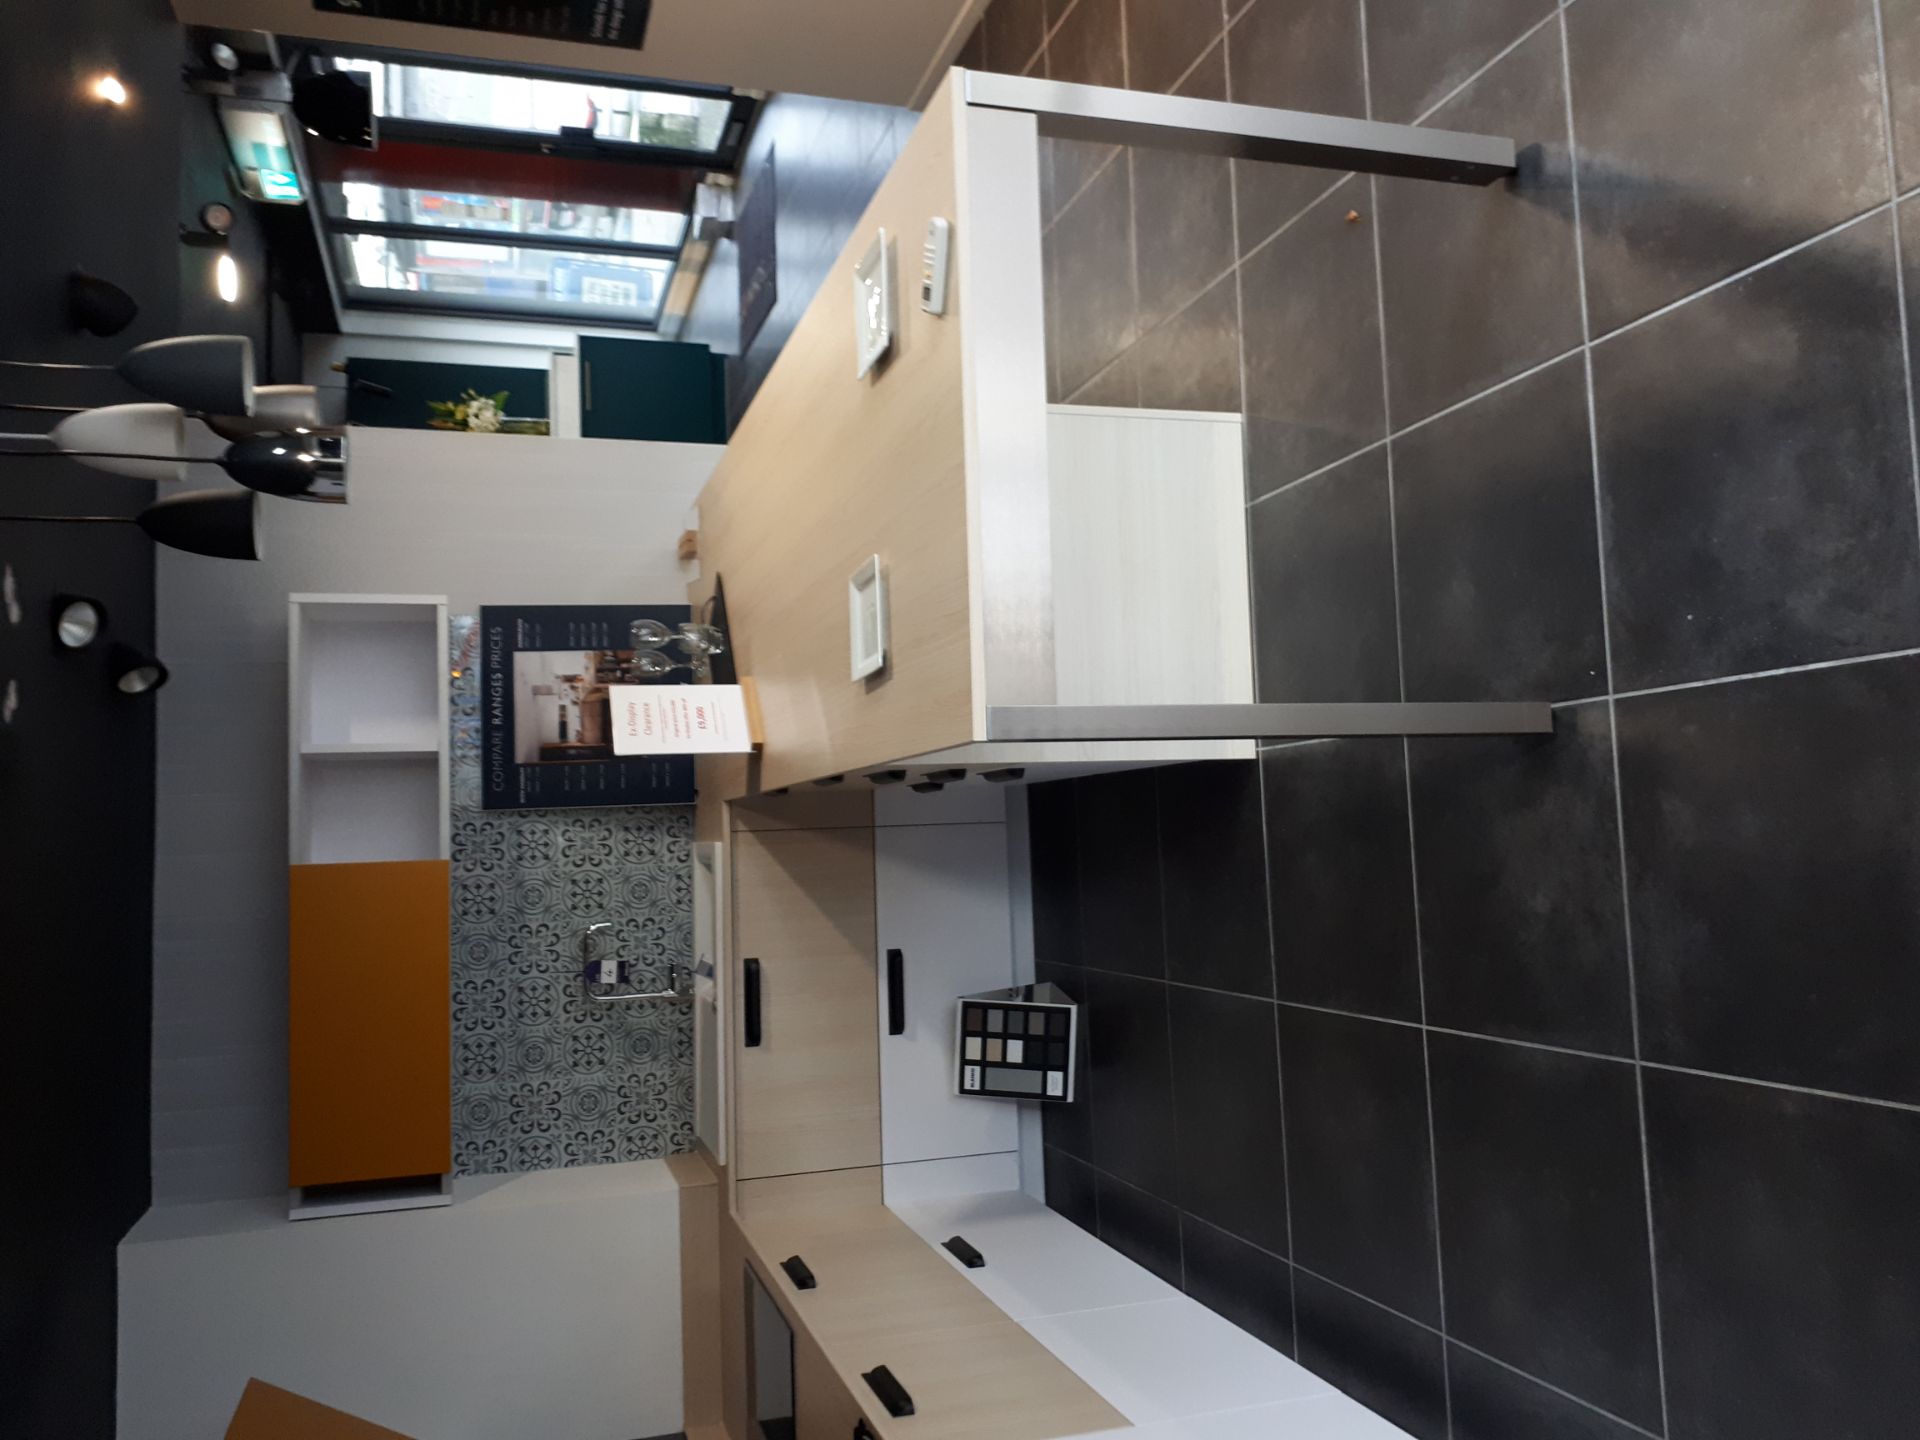 Schmidt Premium range display kitchen in Arcos Mix - Image 2 of 8